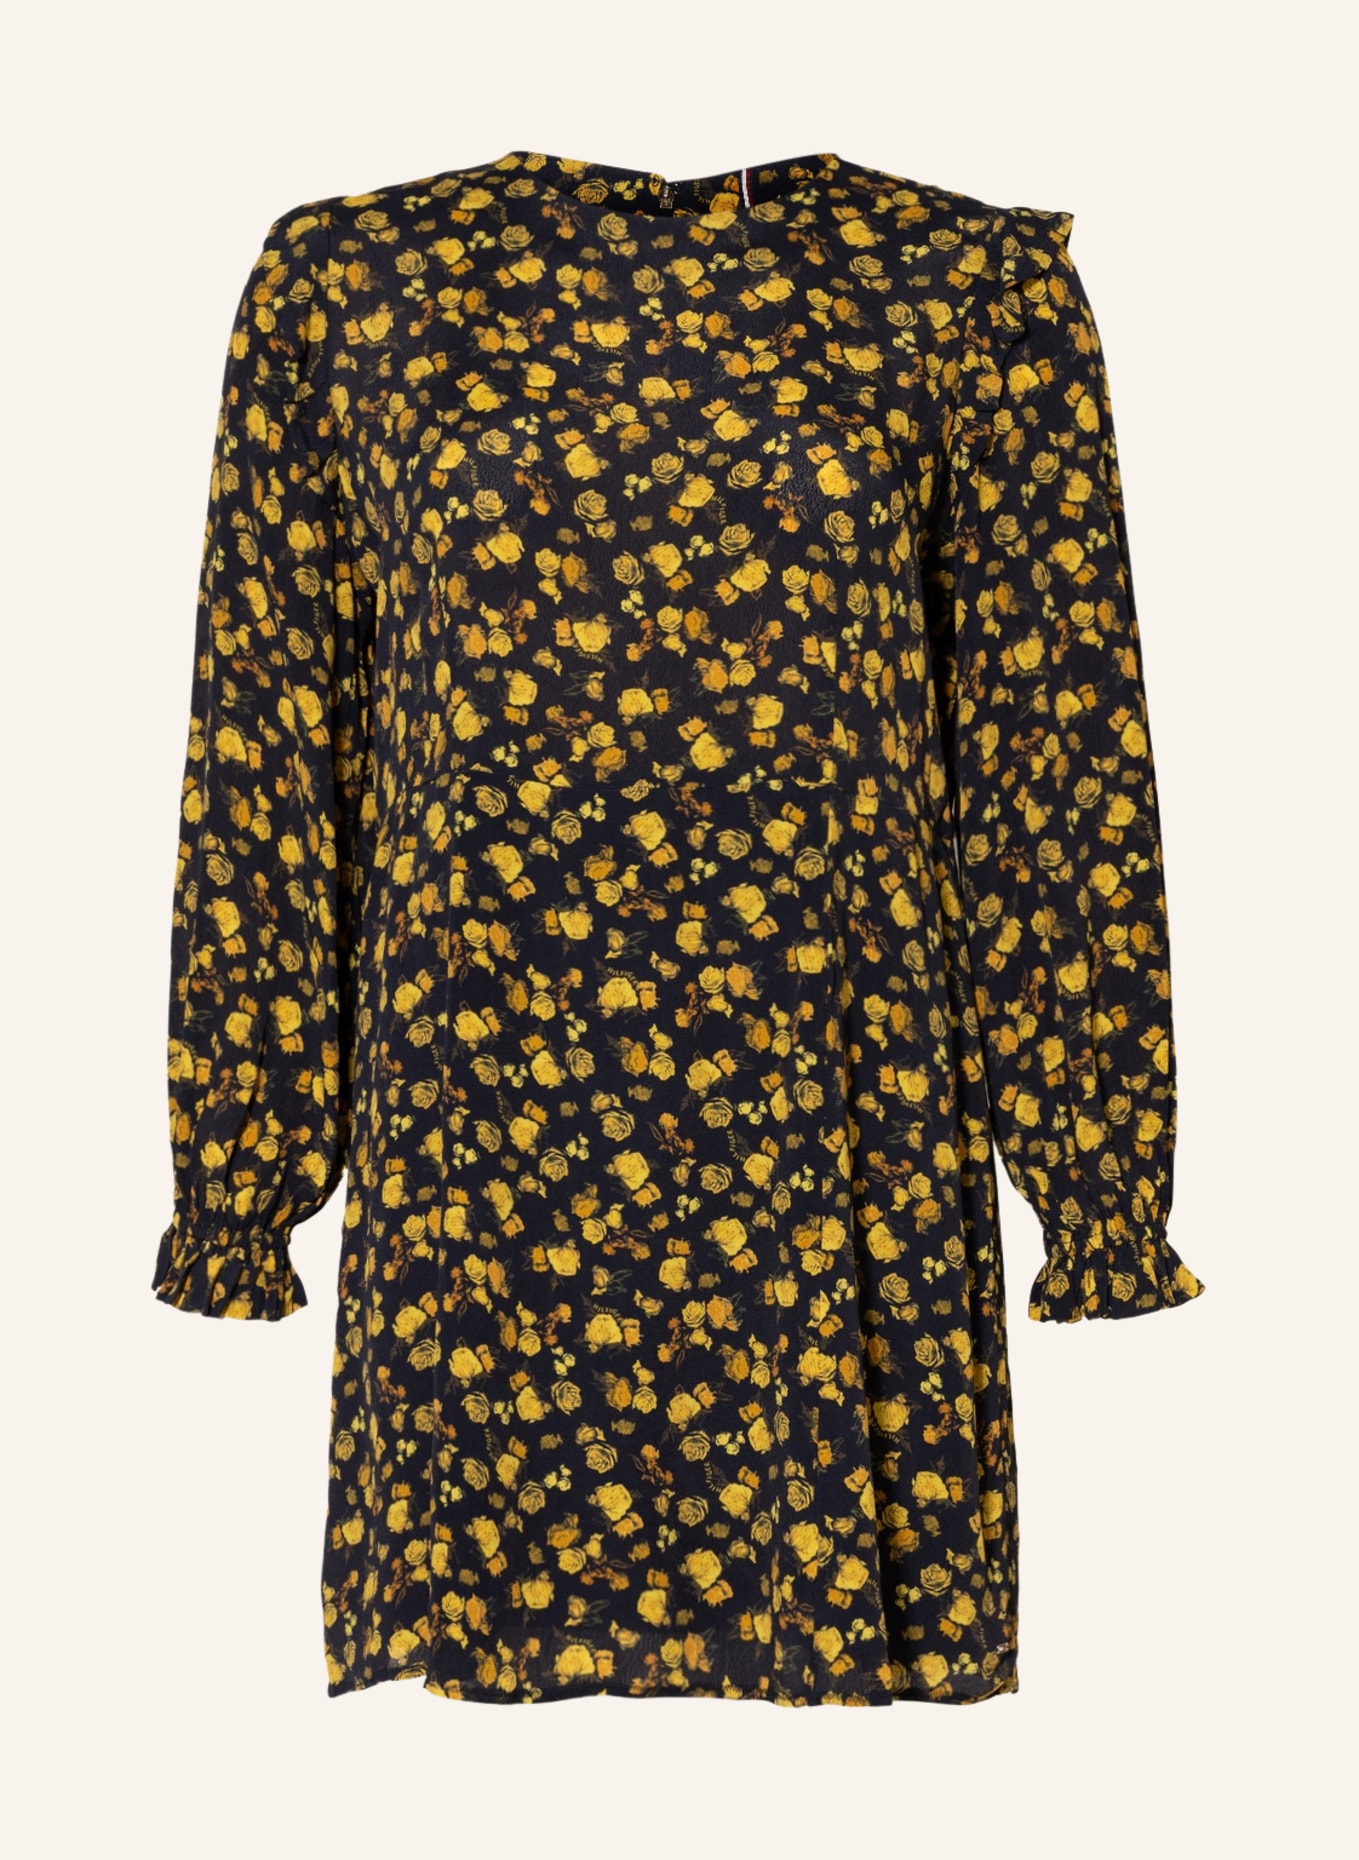 TOMMY HILFIGER Kleid mit Rüschen, Farbe: SCHWARZ/ GELB (Bild 1)